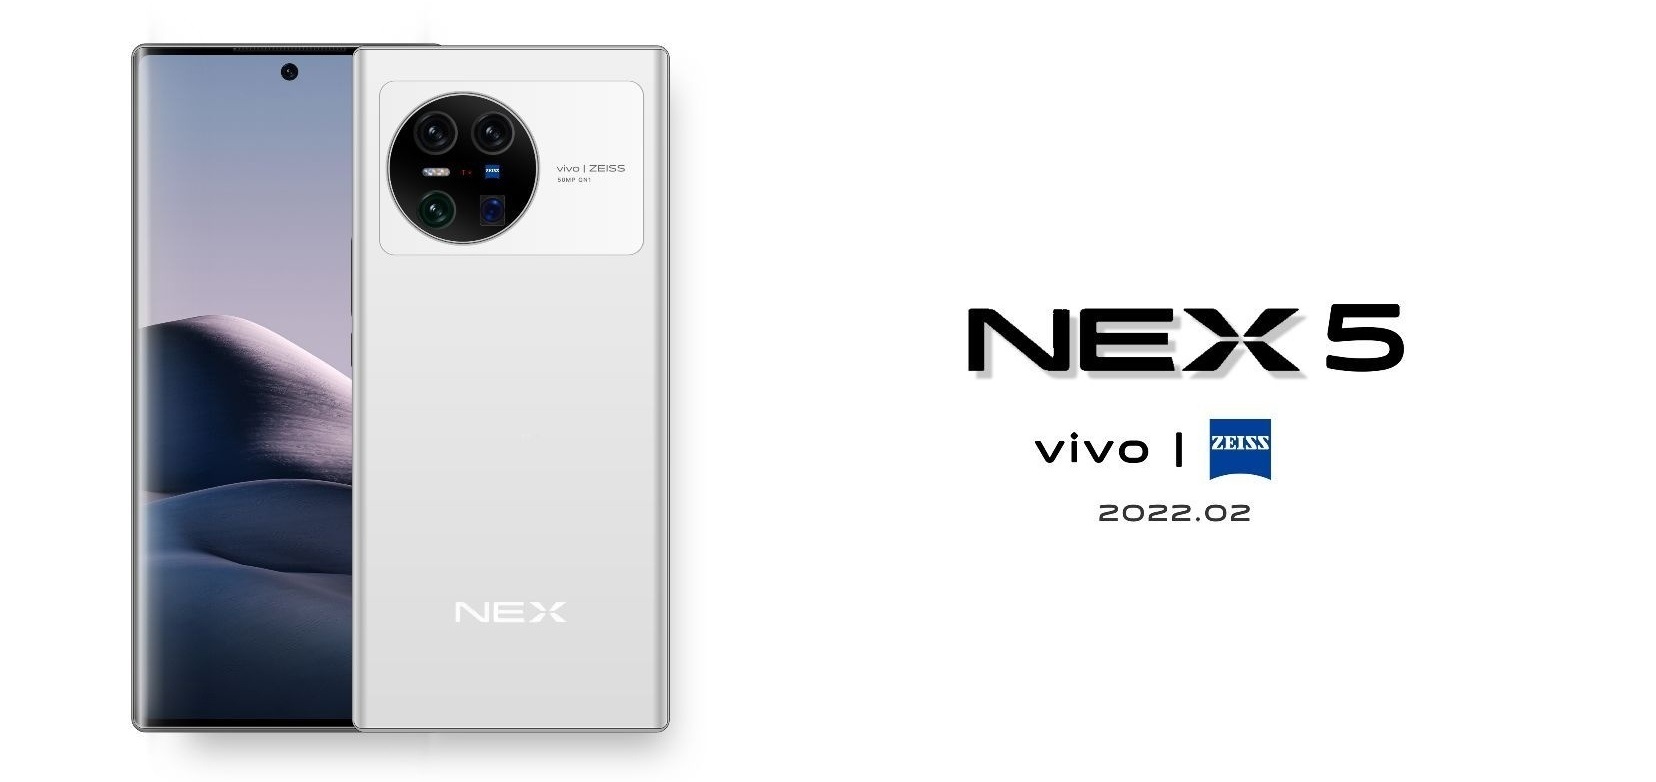 Od 940 USD – poznano ceny wszystkich modyfikacji vivo NEX 5